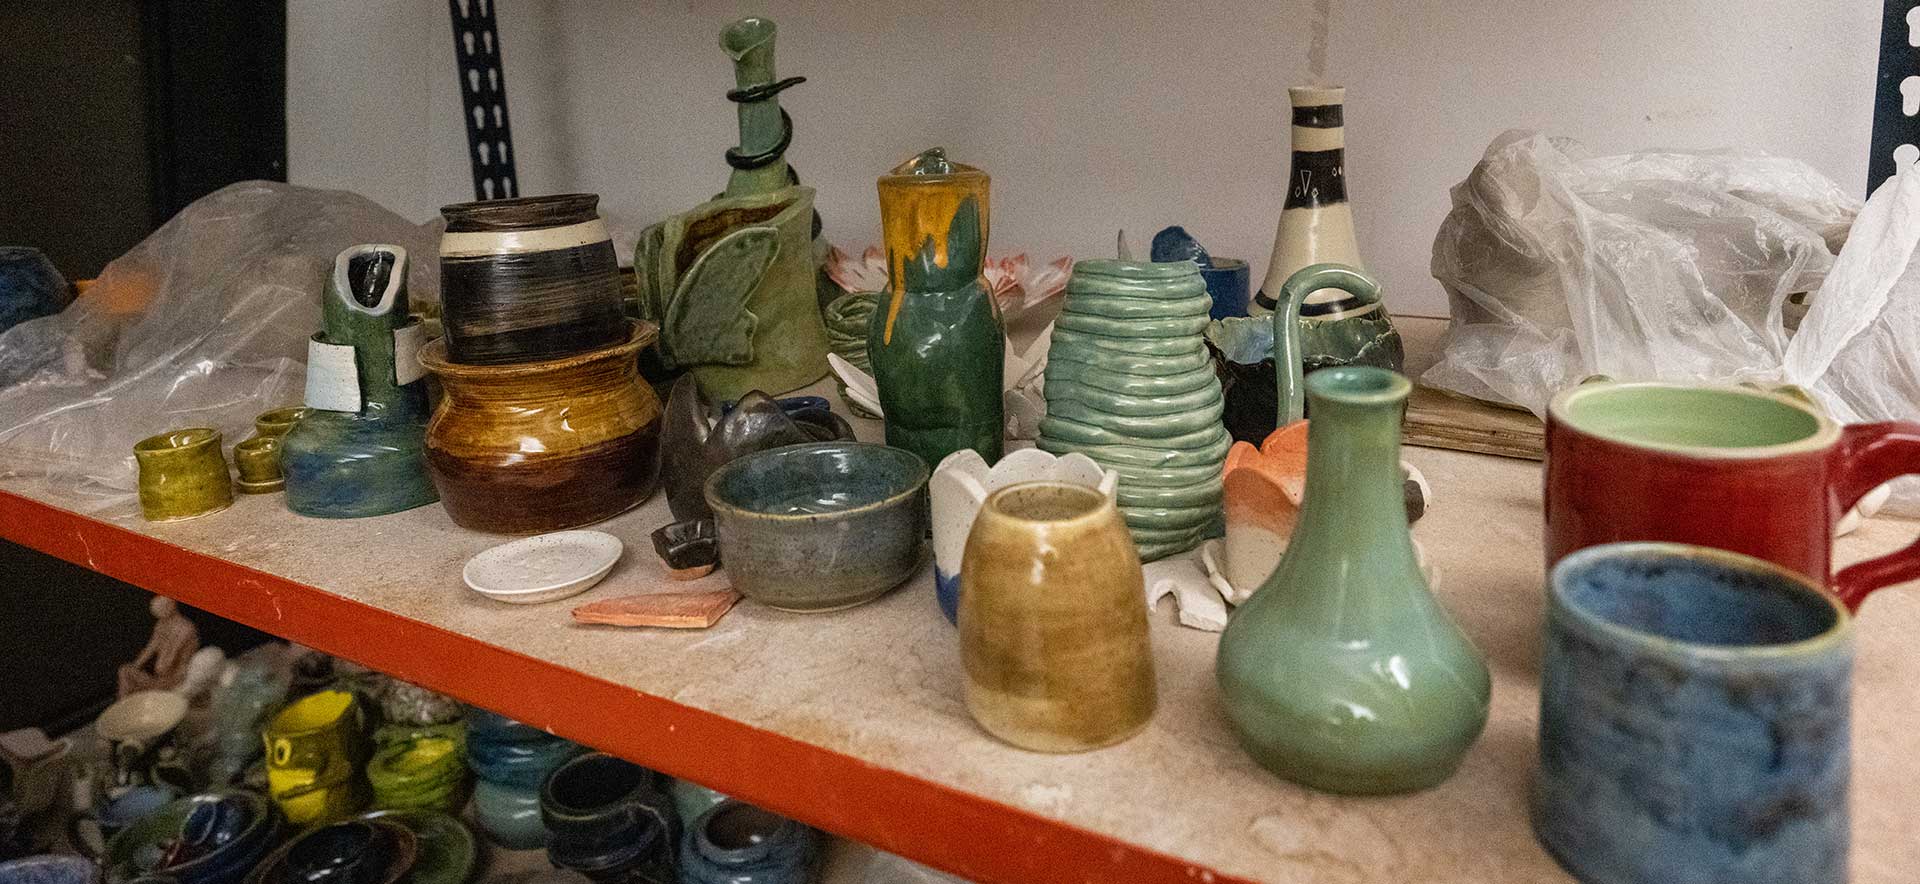 Pottery Studio - Brandon Fuzzy Schwartz